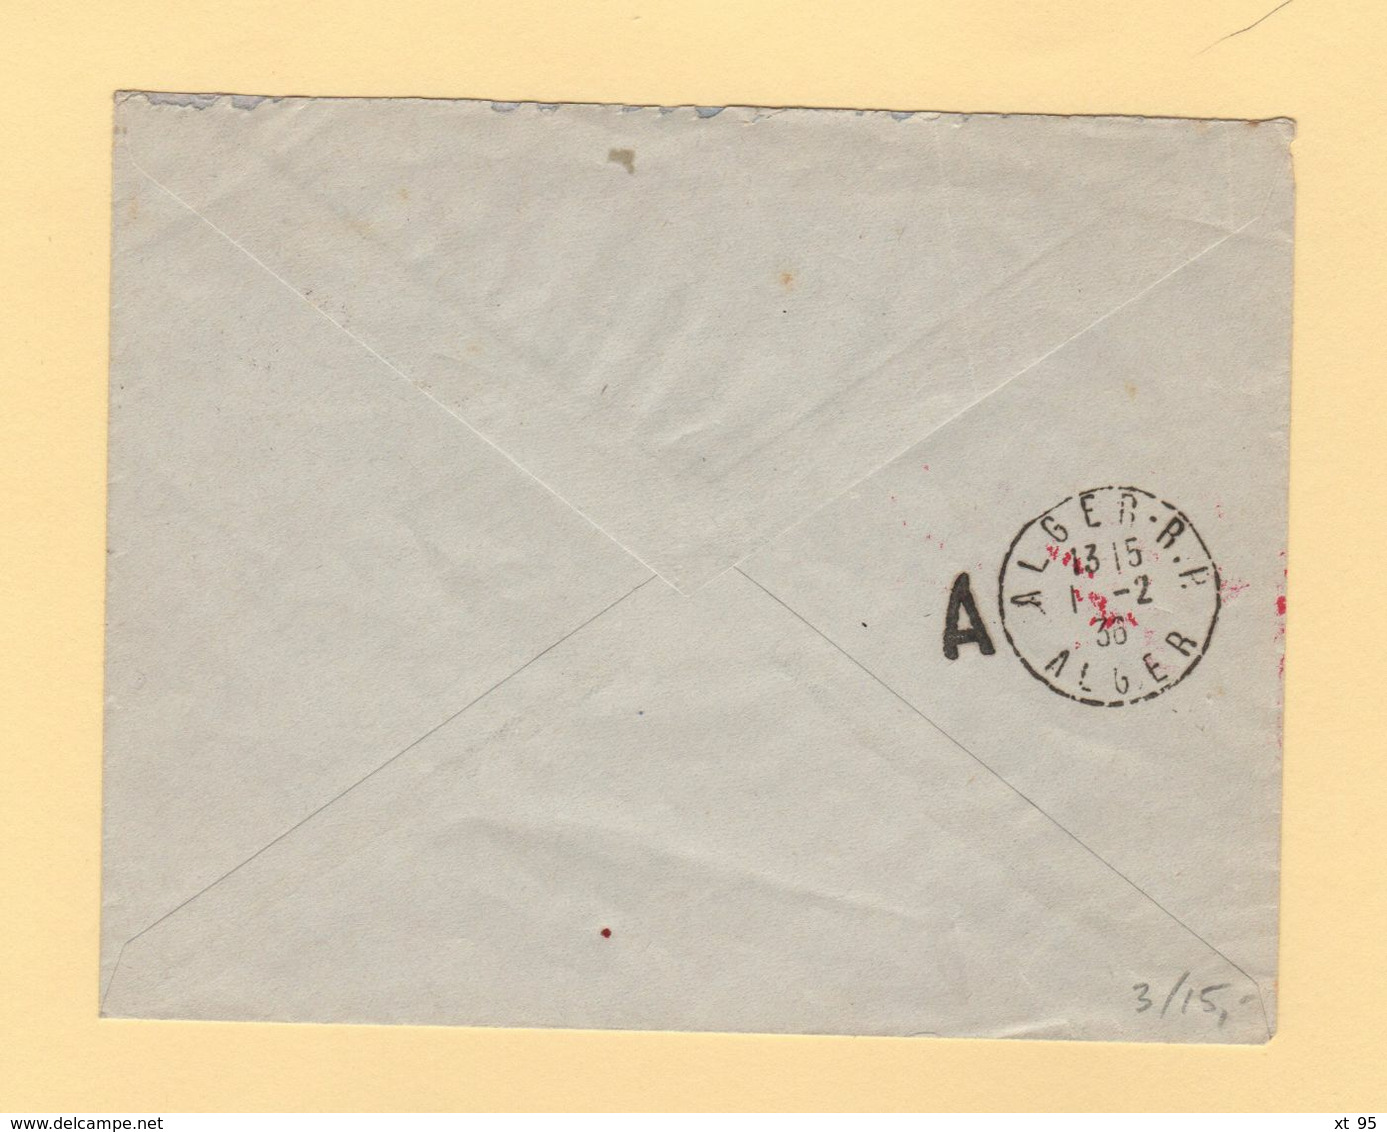 Tunisie - Premier Courrier Postal Aerien Tunisie Algerie - 1er Fevrier 1936 - Poste Aérienne